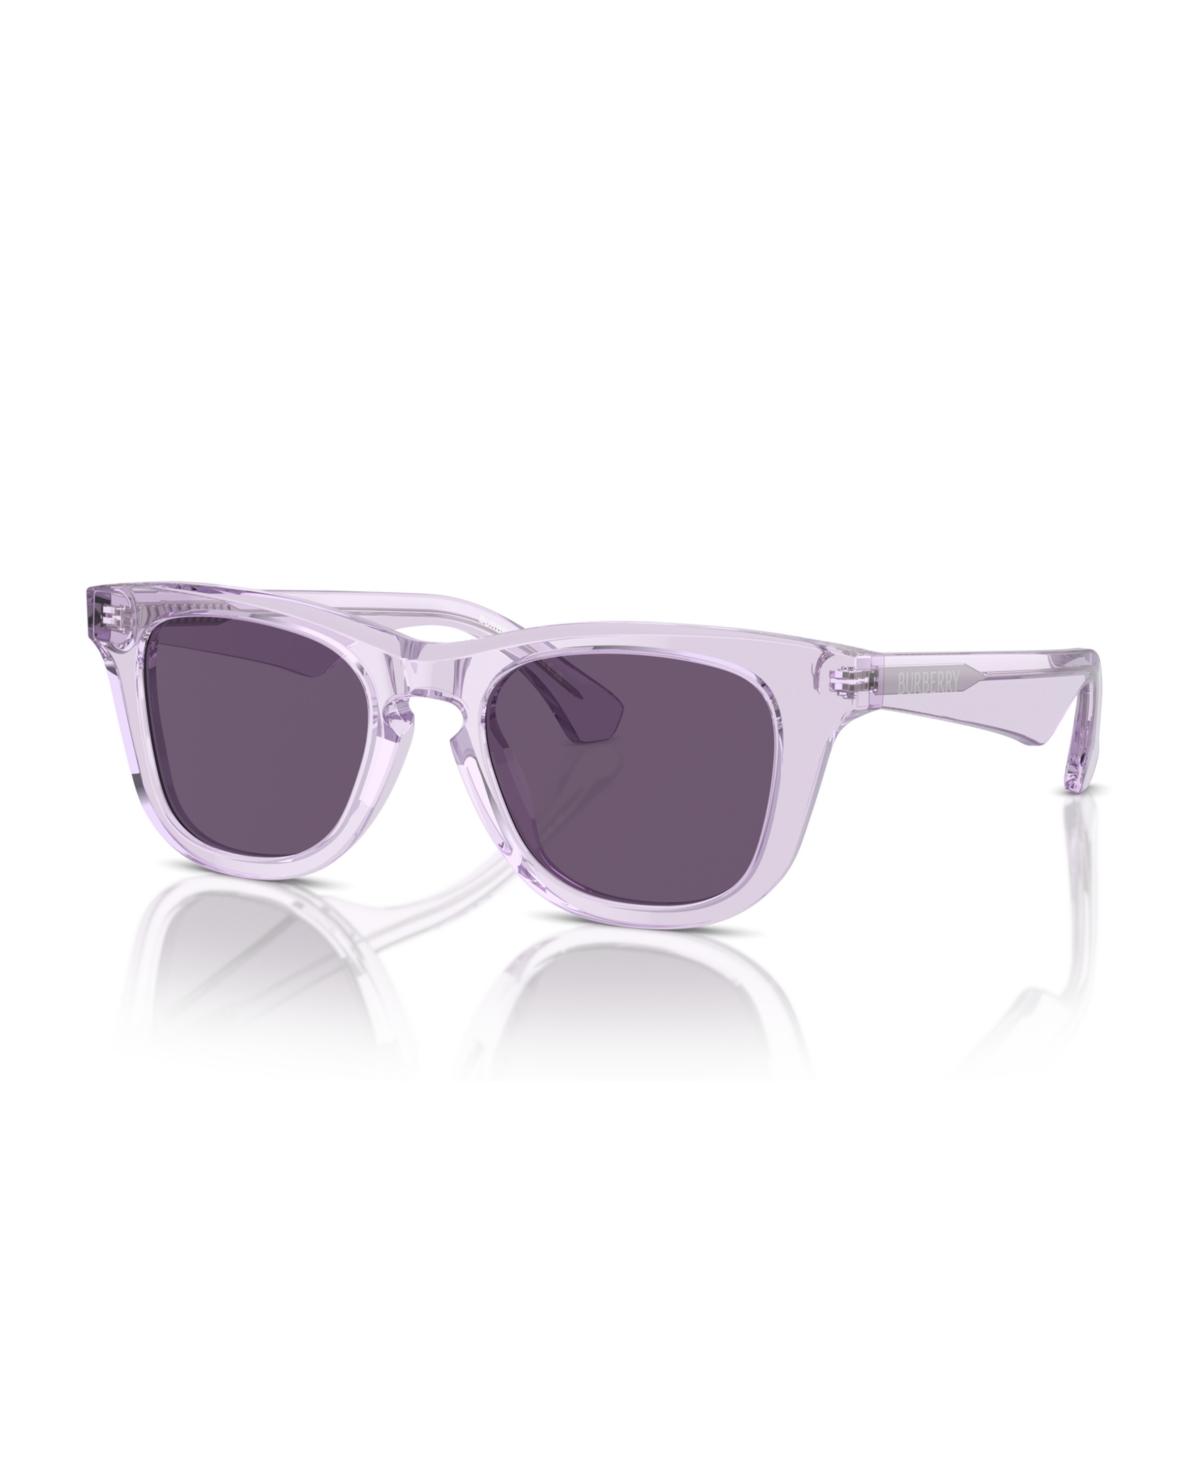 Burberry Kid's Sunglasses, Jb4002 In Lilac